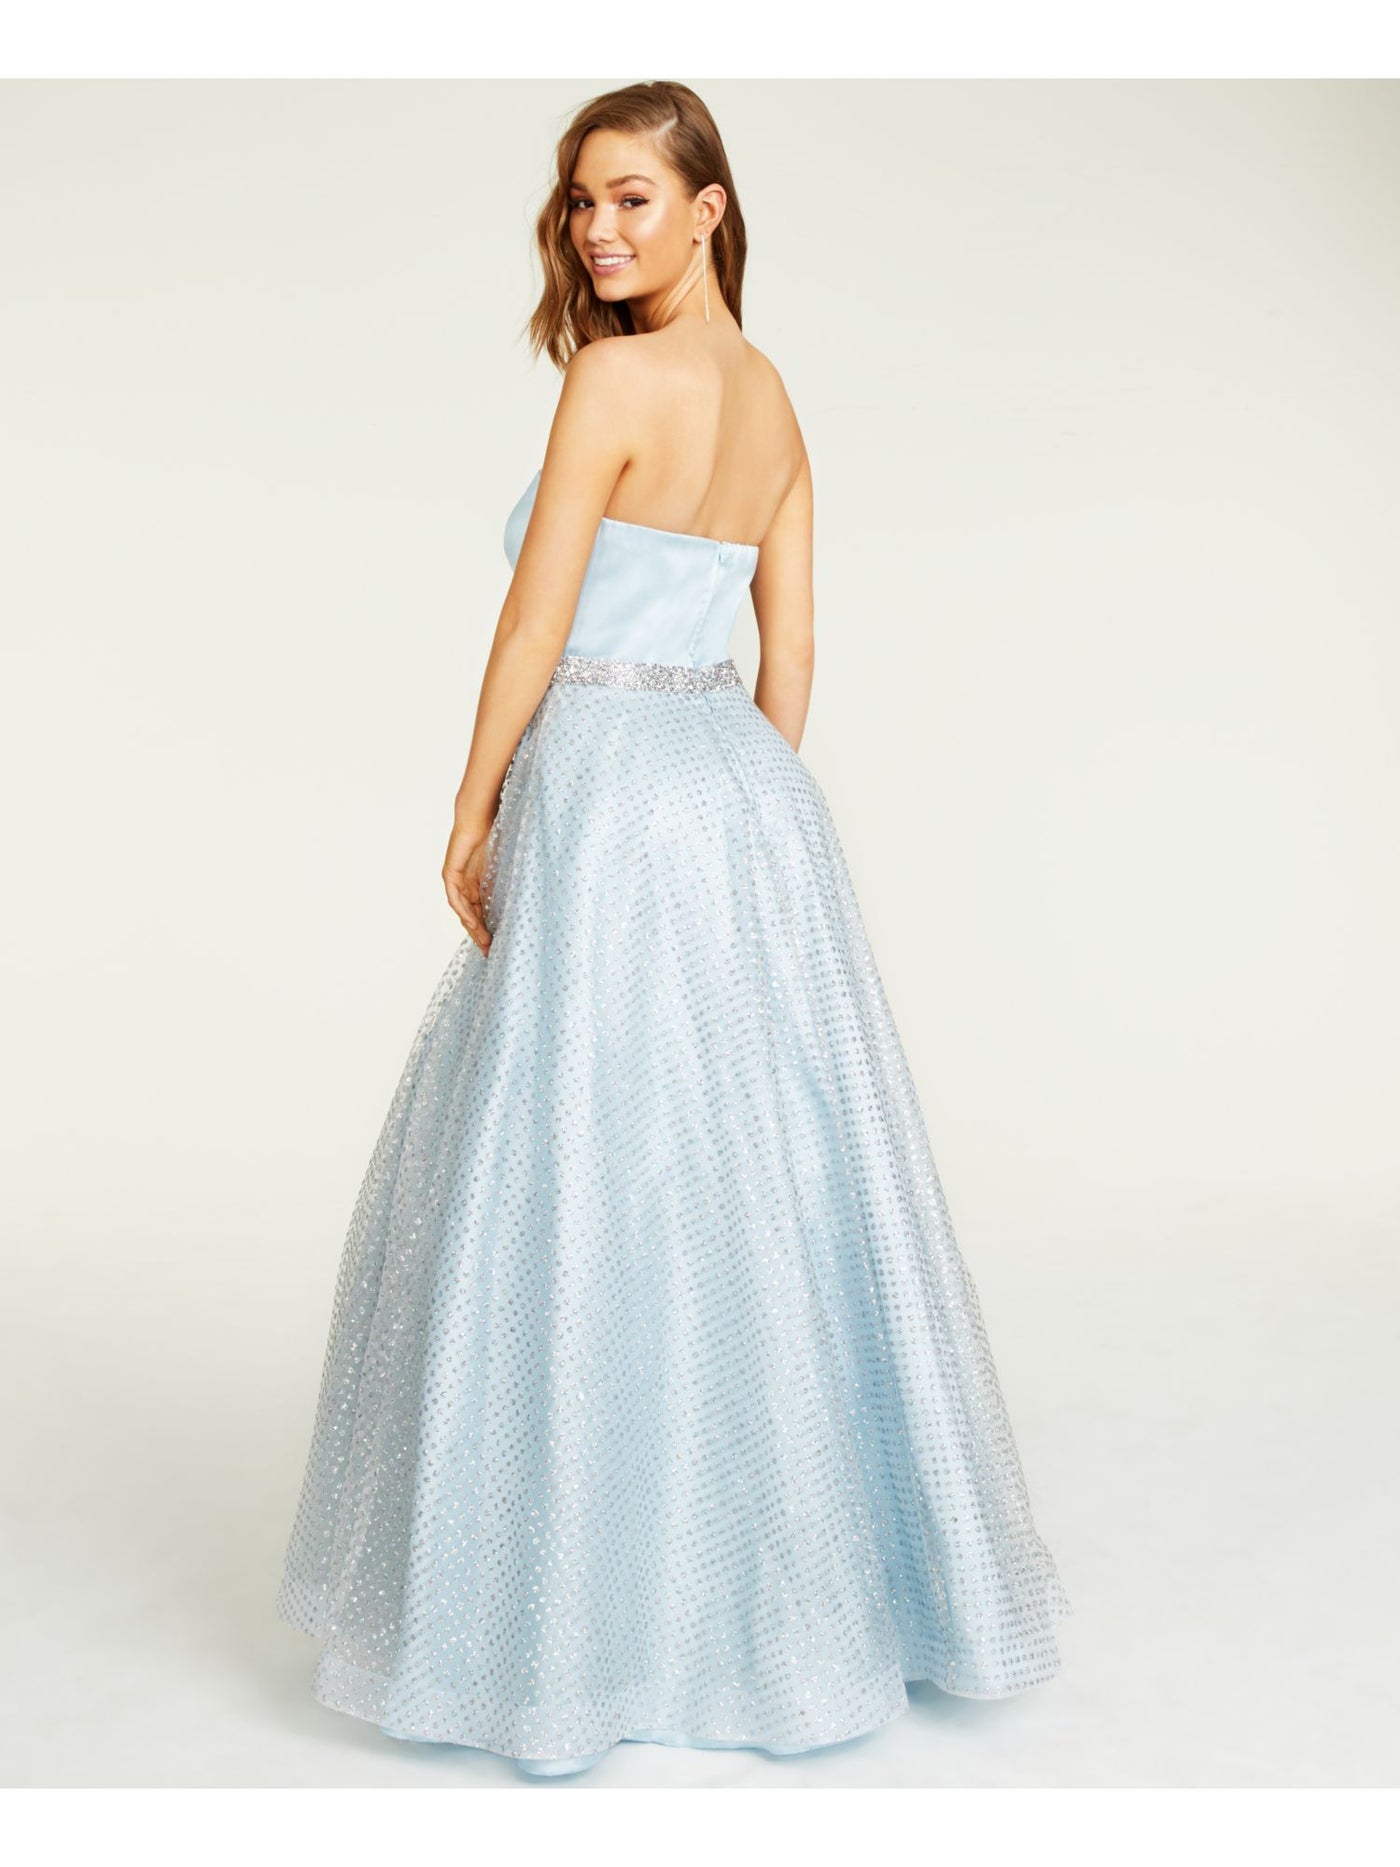 B DARLIN Womens Light Blue Glitter Overlay Sleeveless Full-Length Prom Dress Juniors 13\14